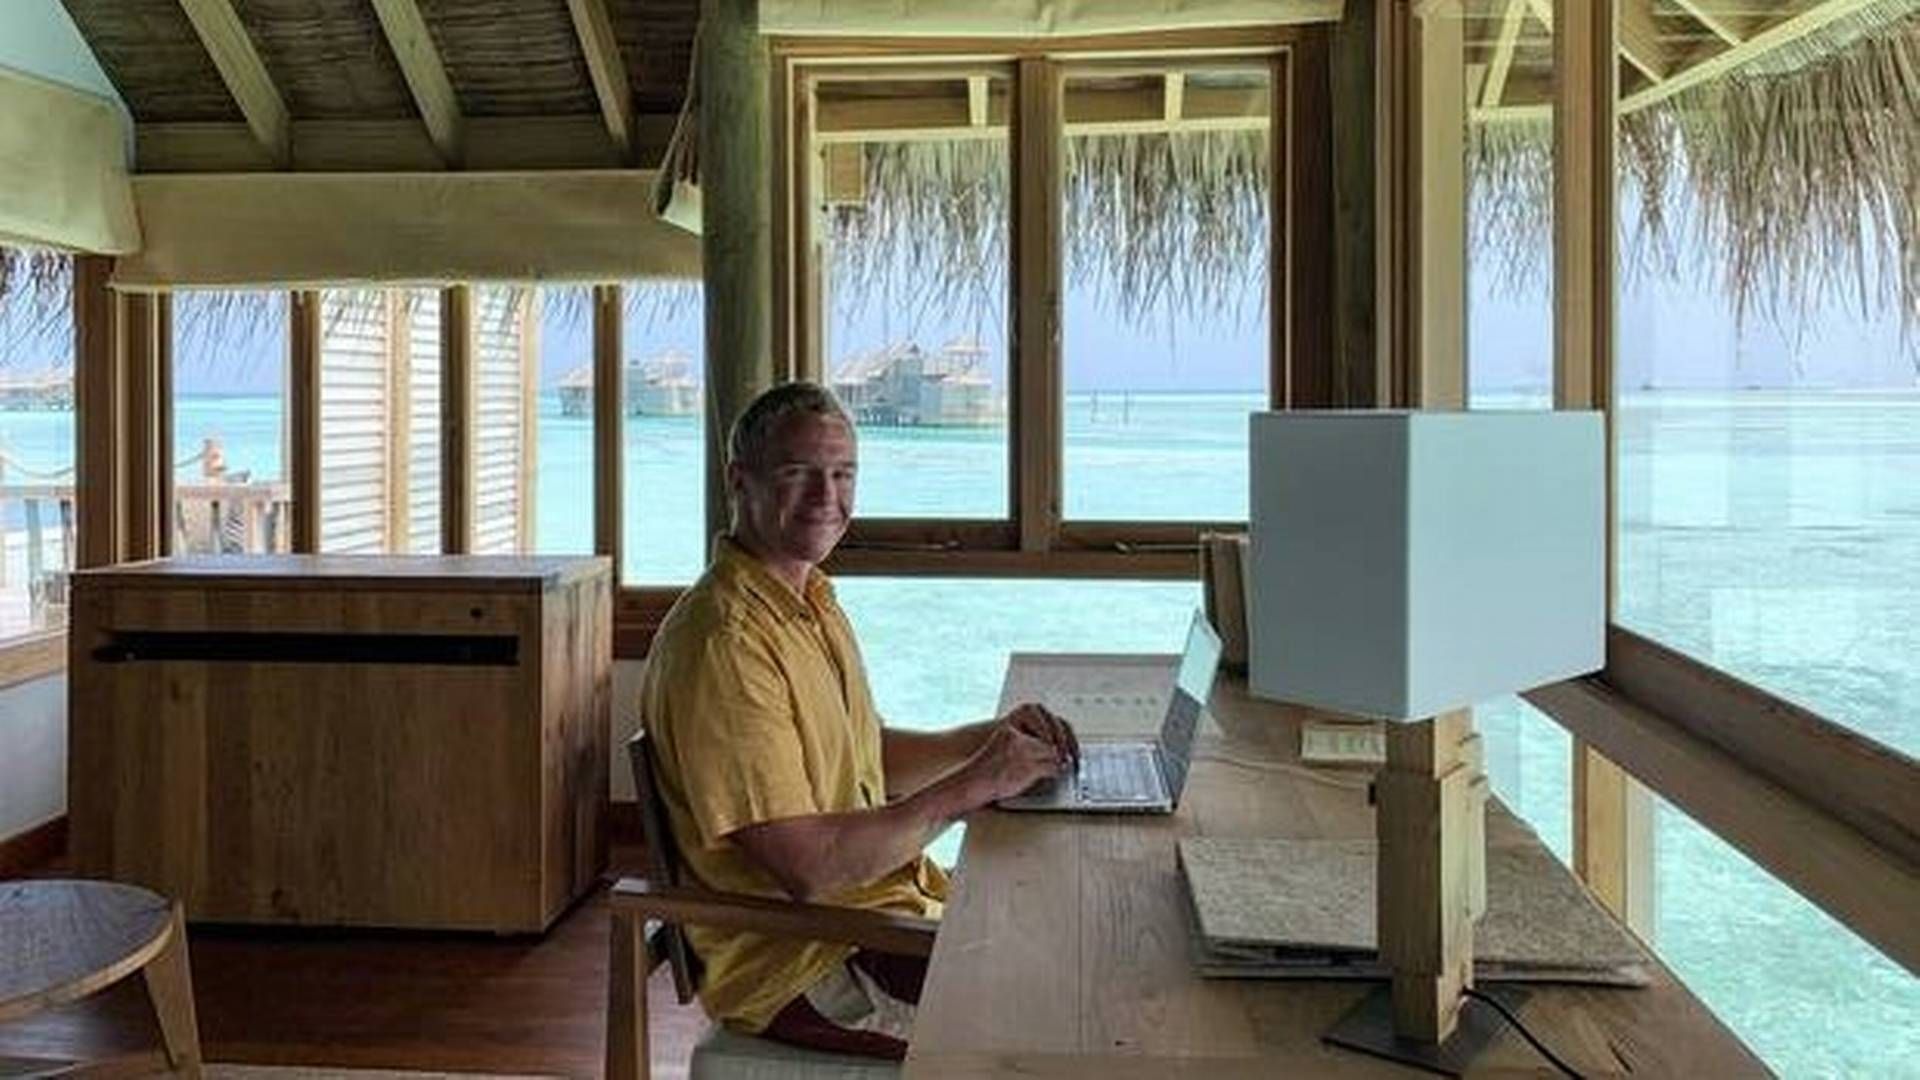 Som rejsende indehaver af et rejsebureau har Matti Binderups kontor det med at skifte sceneri. Her fra øen Gili Lankanfushi, der er en del af Maldiverne. | Foto: Privatfoto